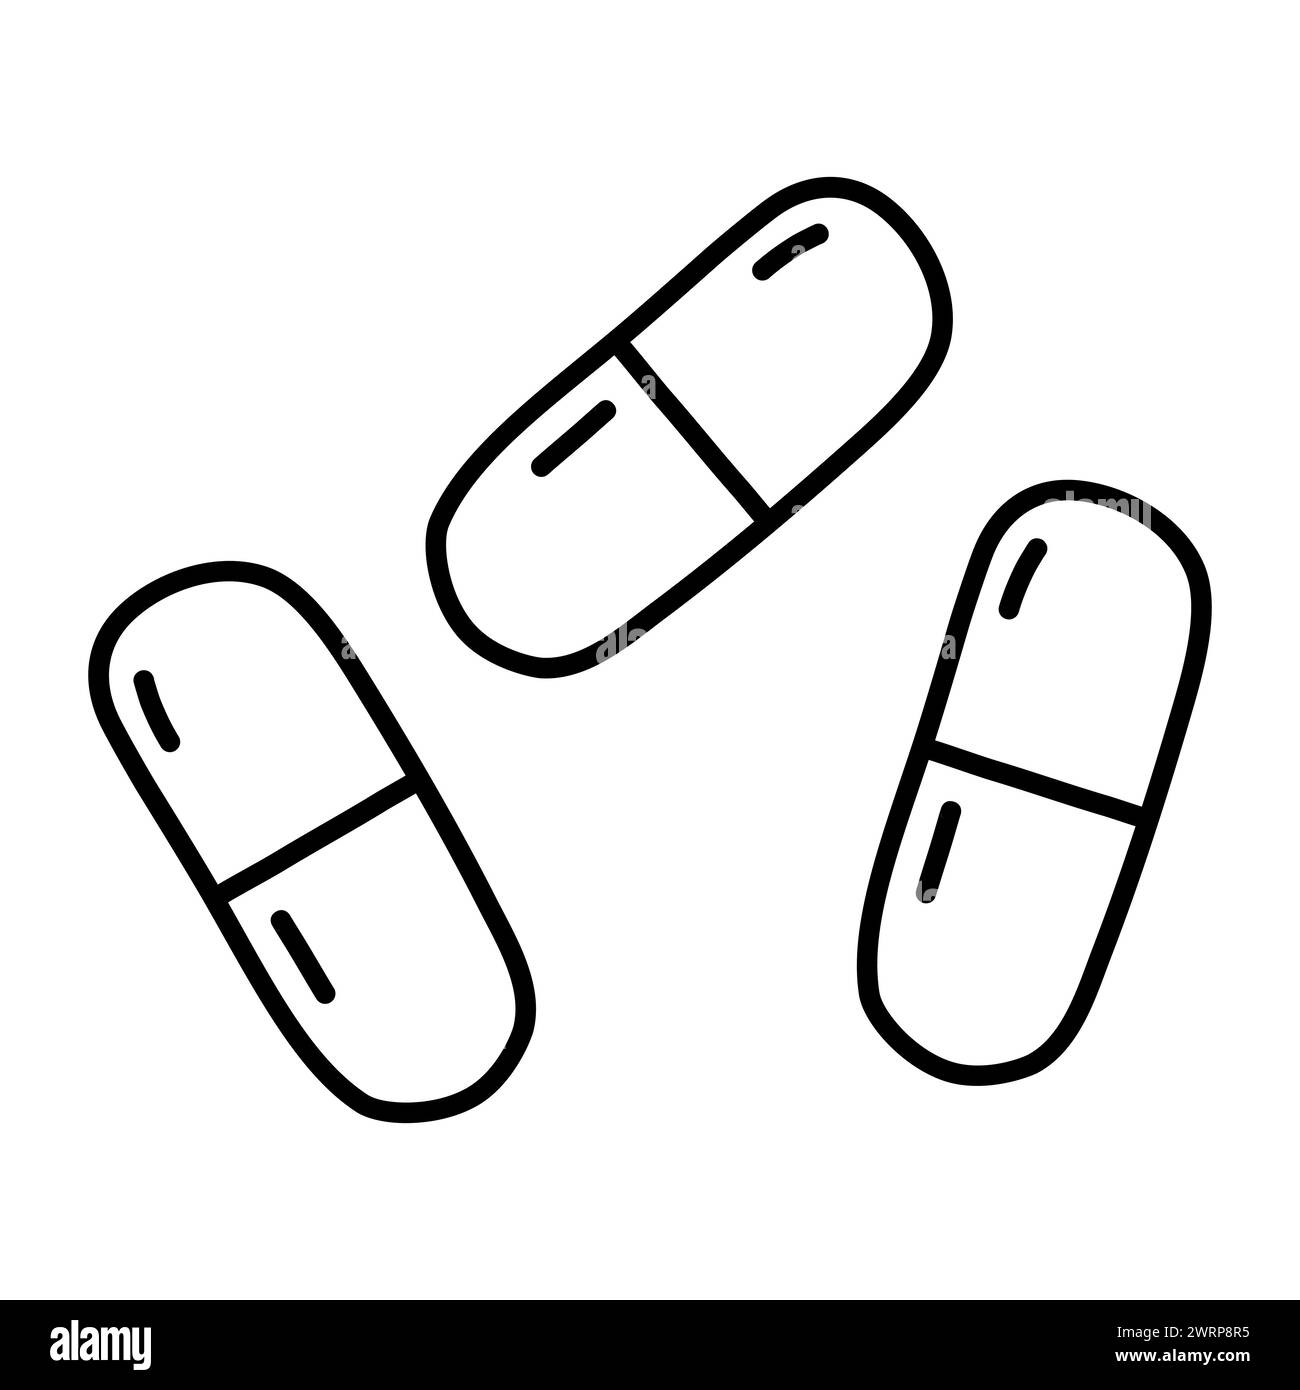 Zwei Teile Kapsel Tabletten oder Pillen, Erkältung und Grippe Behandlung, Doodle Stil flache Vektor Umrissillustration für Kinder Malbuch Stock Vektor